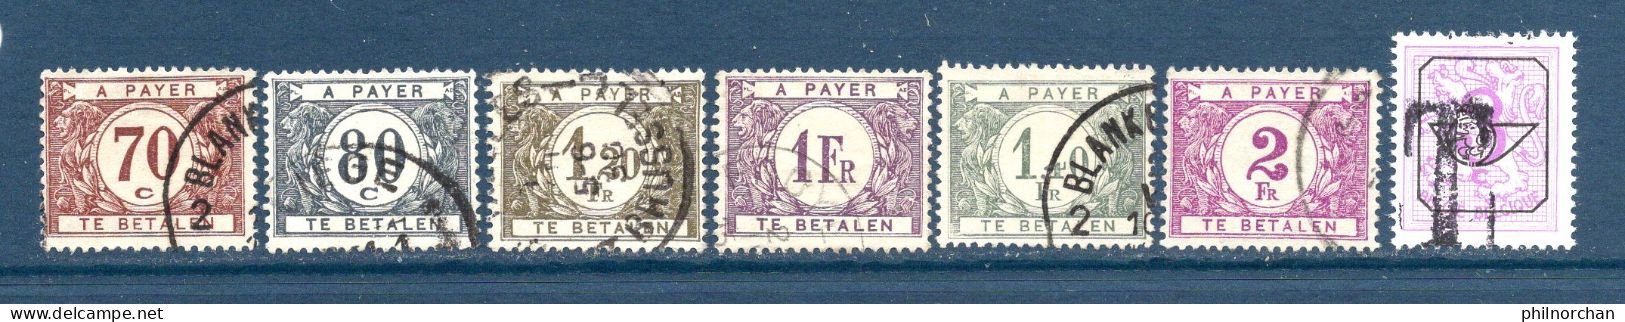 Belgique Timbres Taxe  1895 à 1922 35 Timbres Différents Oblitérés   2,50 €    (cote 33,05 €) - Stamps